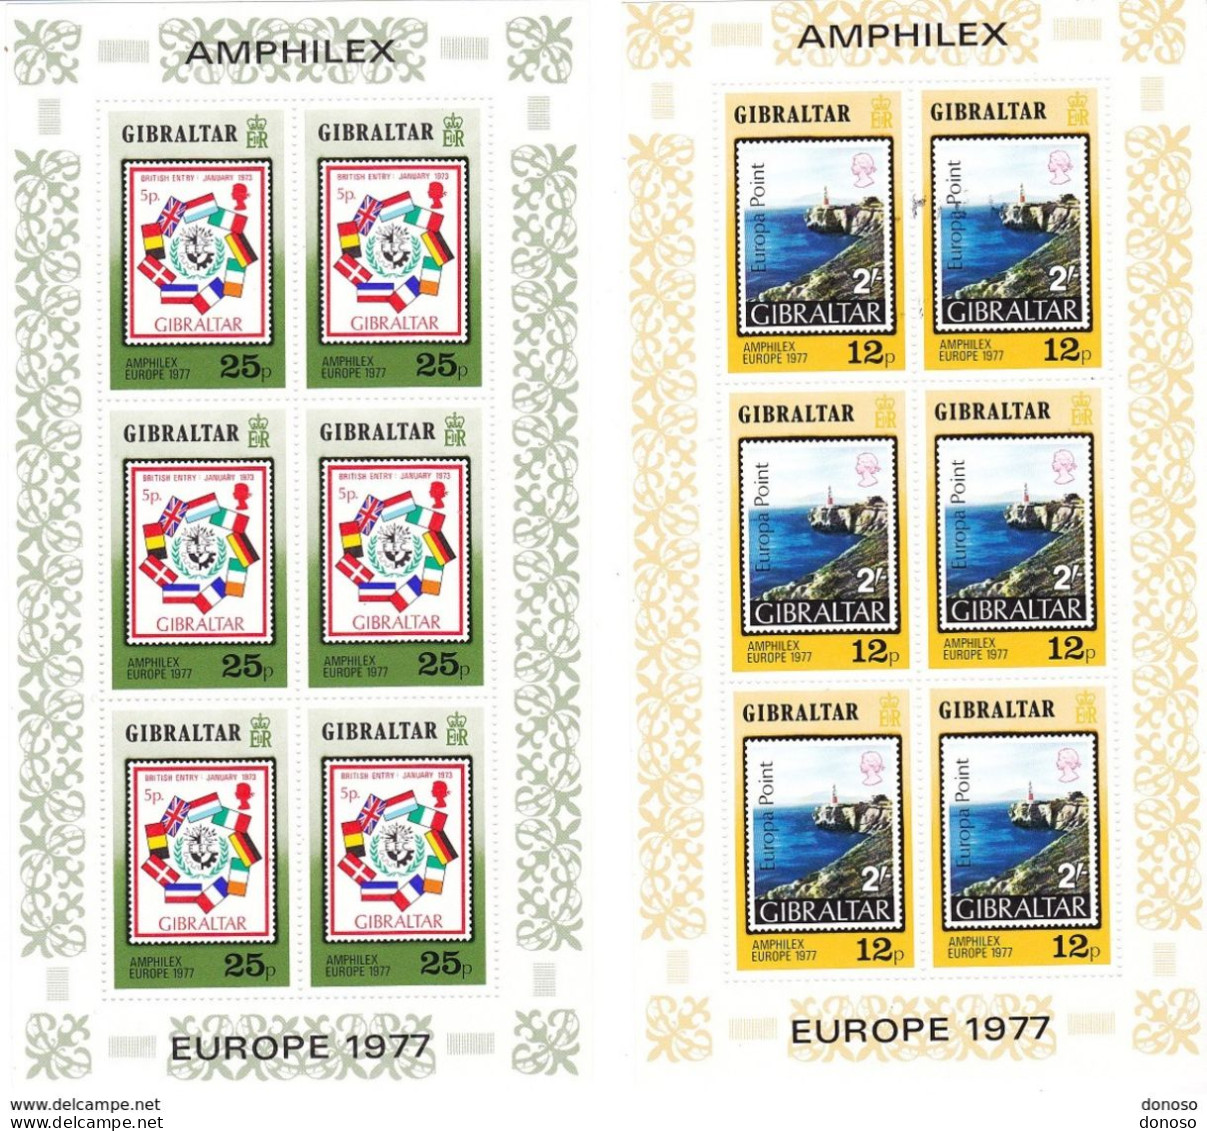 GIBRALTAR 1977  AMPHILEX TIMBRE SUR TIMBRE  3 BLOCS DE 6 Yvert 364-366, Michel 364-366 NEUF** MNH Cote :yv 12 Euros - Gibraltar